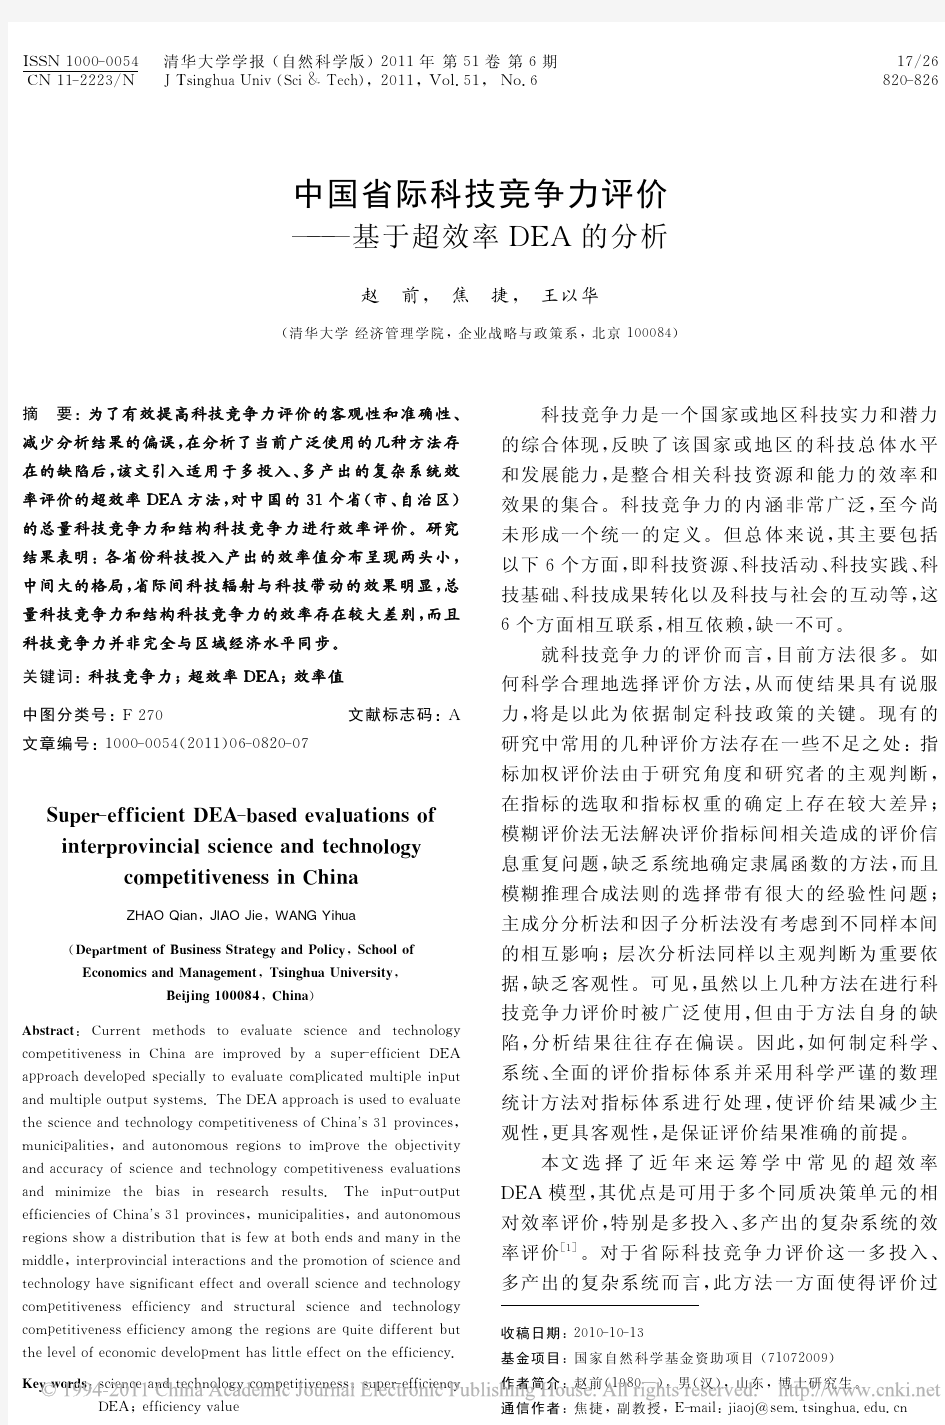 中国省际科技竞争力评价_基于超效率DEA的分析